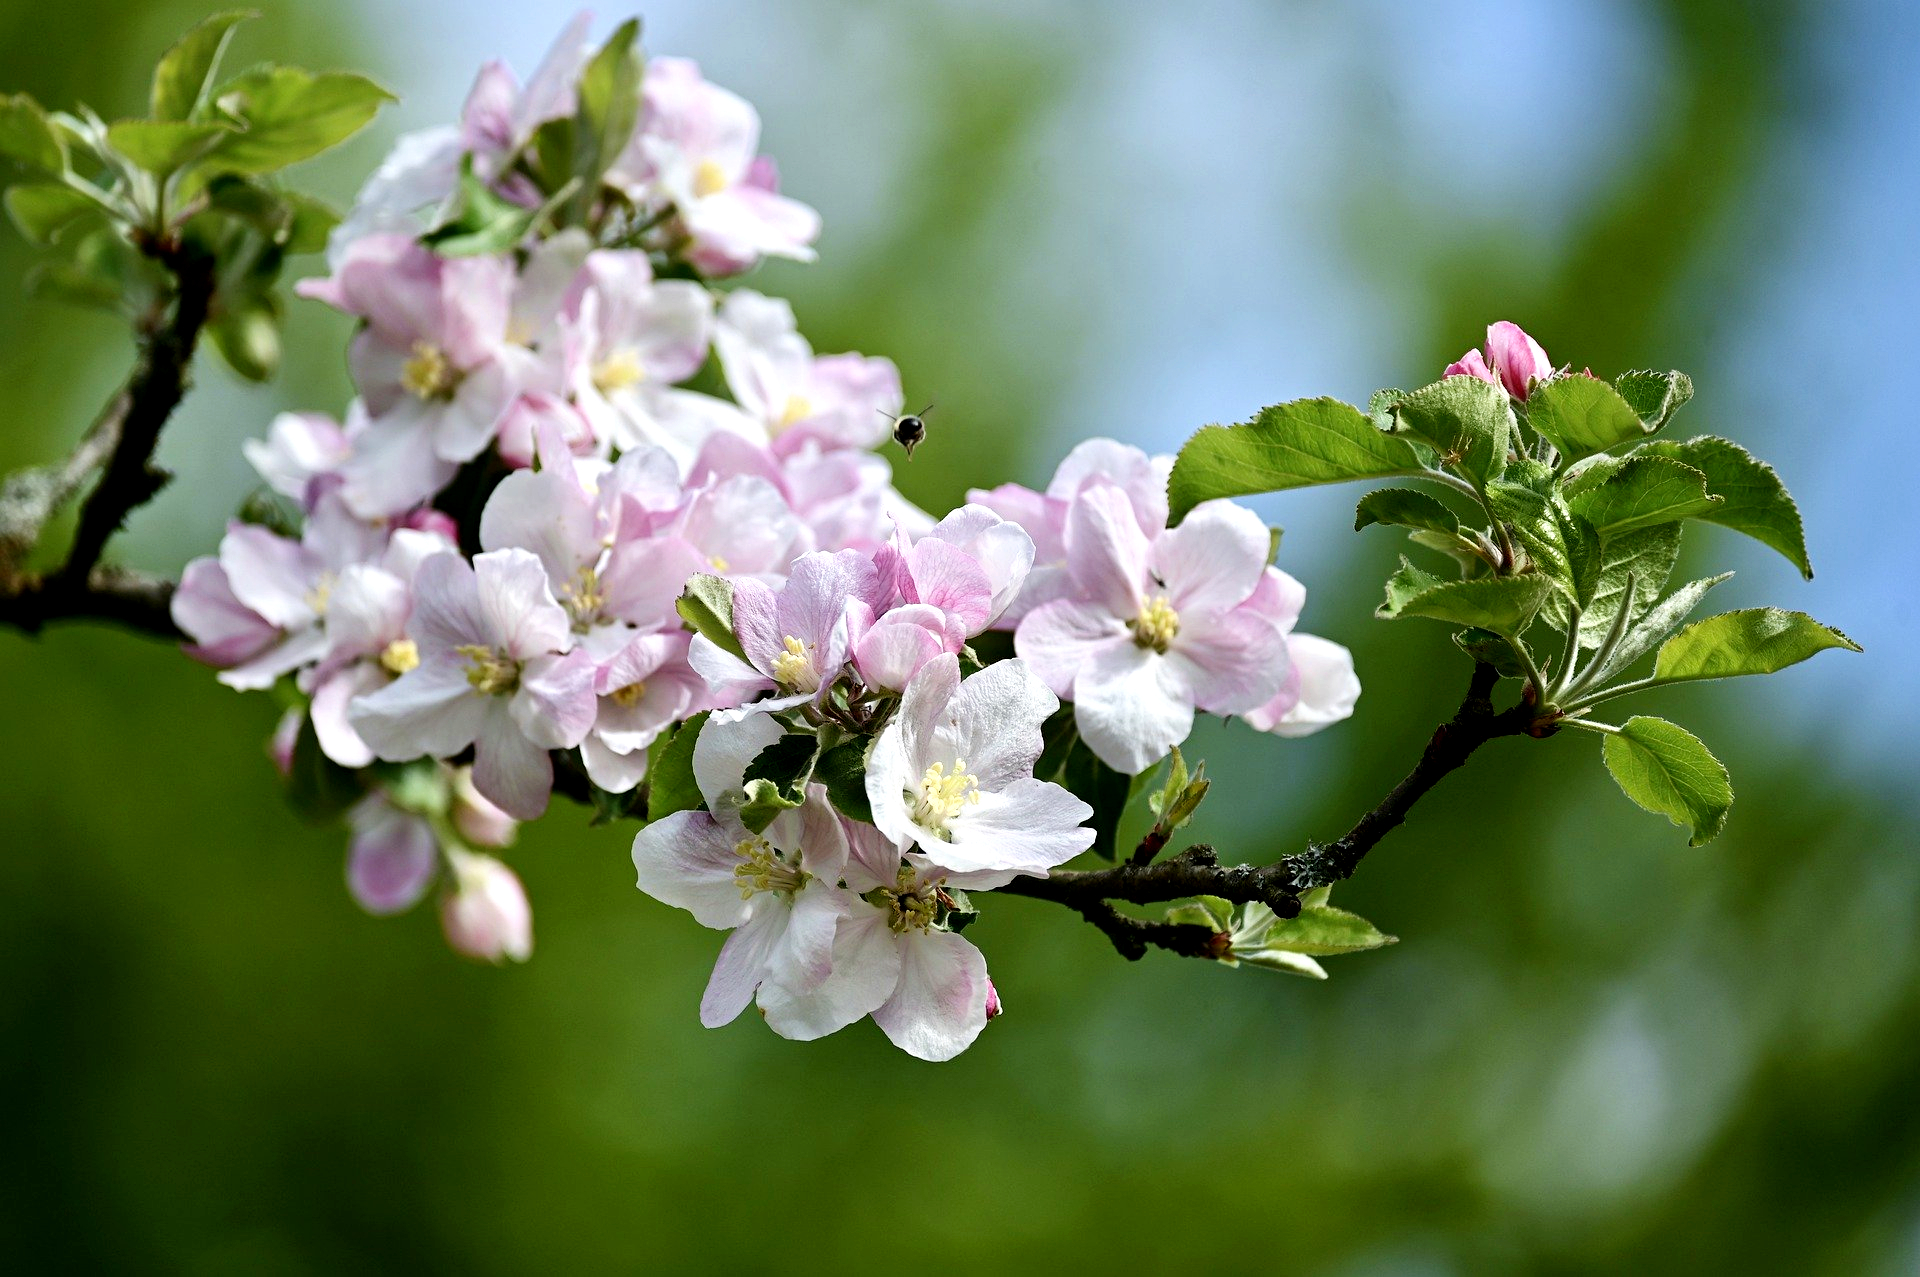 Virágok a faágon, májusi teendőink a kiskertben: virágoskert, gyümölcsös, konyhakert, gyep. Mire kell figyelnünk?